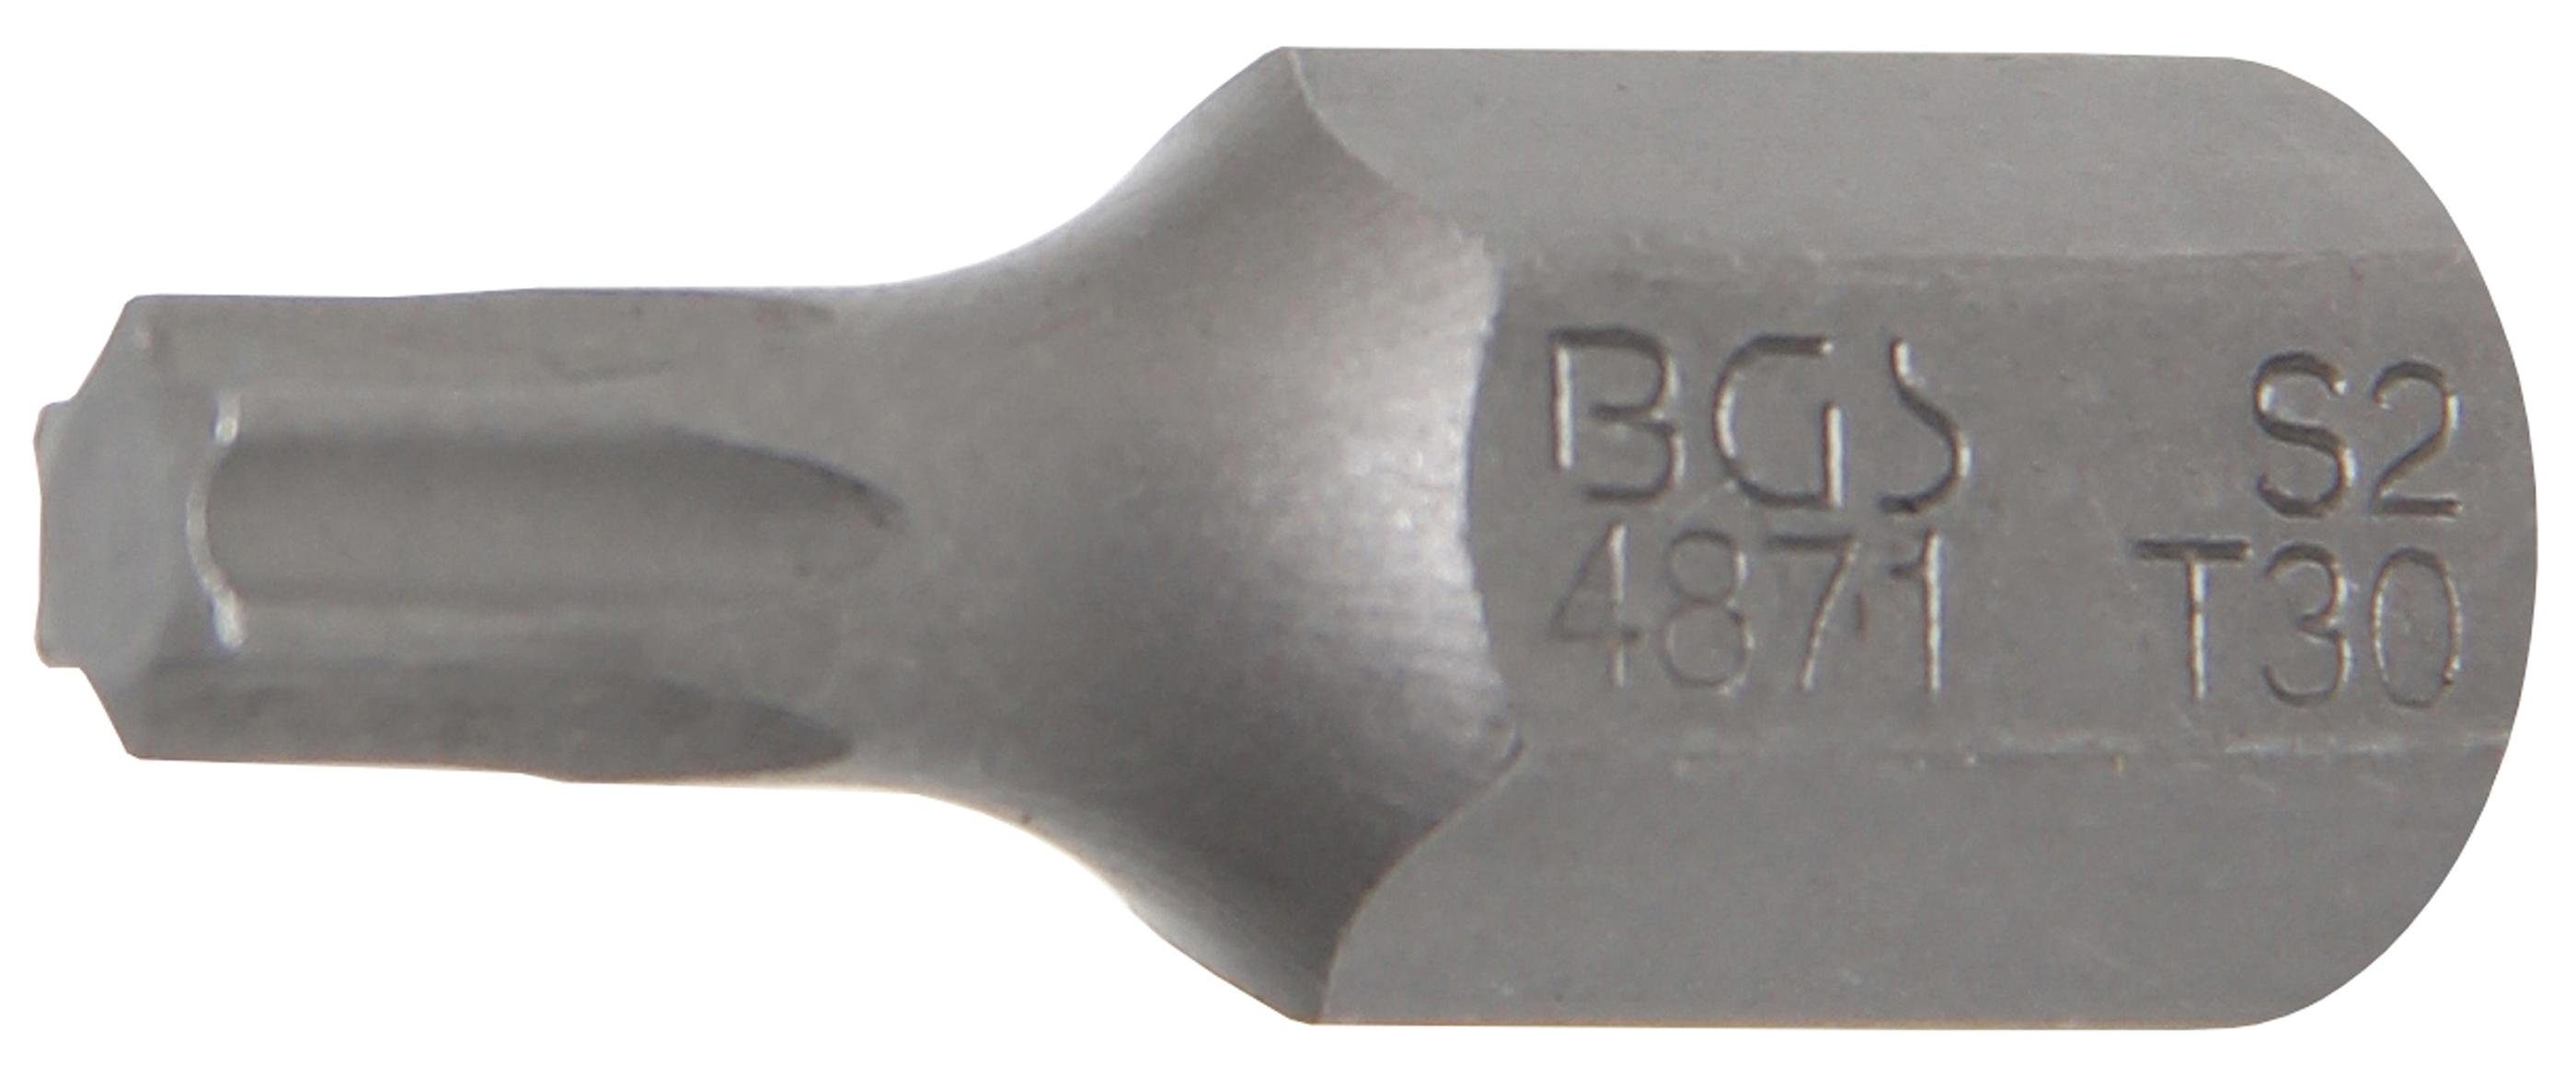 BGS technic Bit-Schraubendreher Bit, Antrieb Außensechskant 10 mm (3/8), T-Profil (für Torx) T30 | Schraubendreher